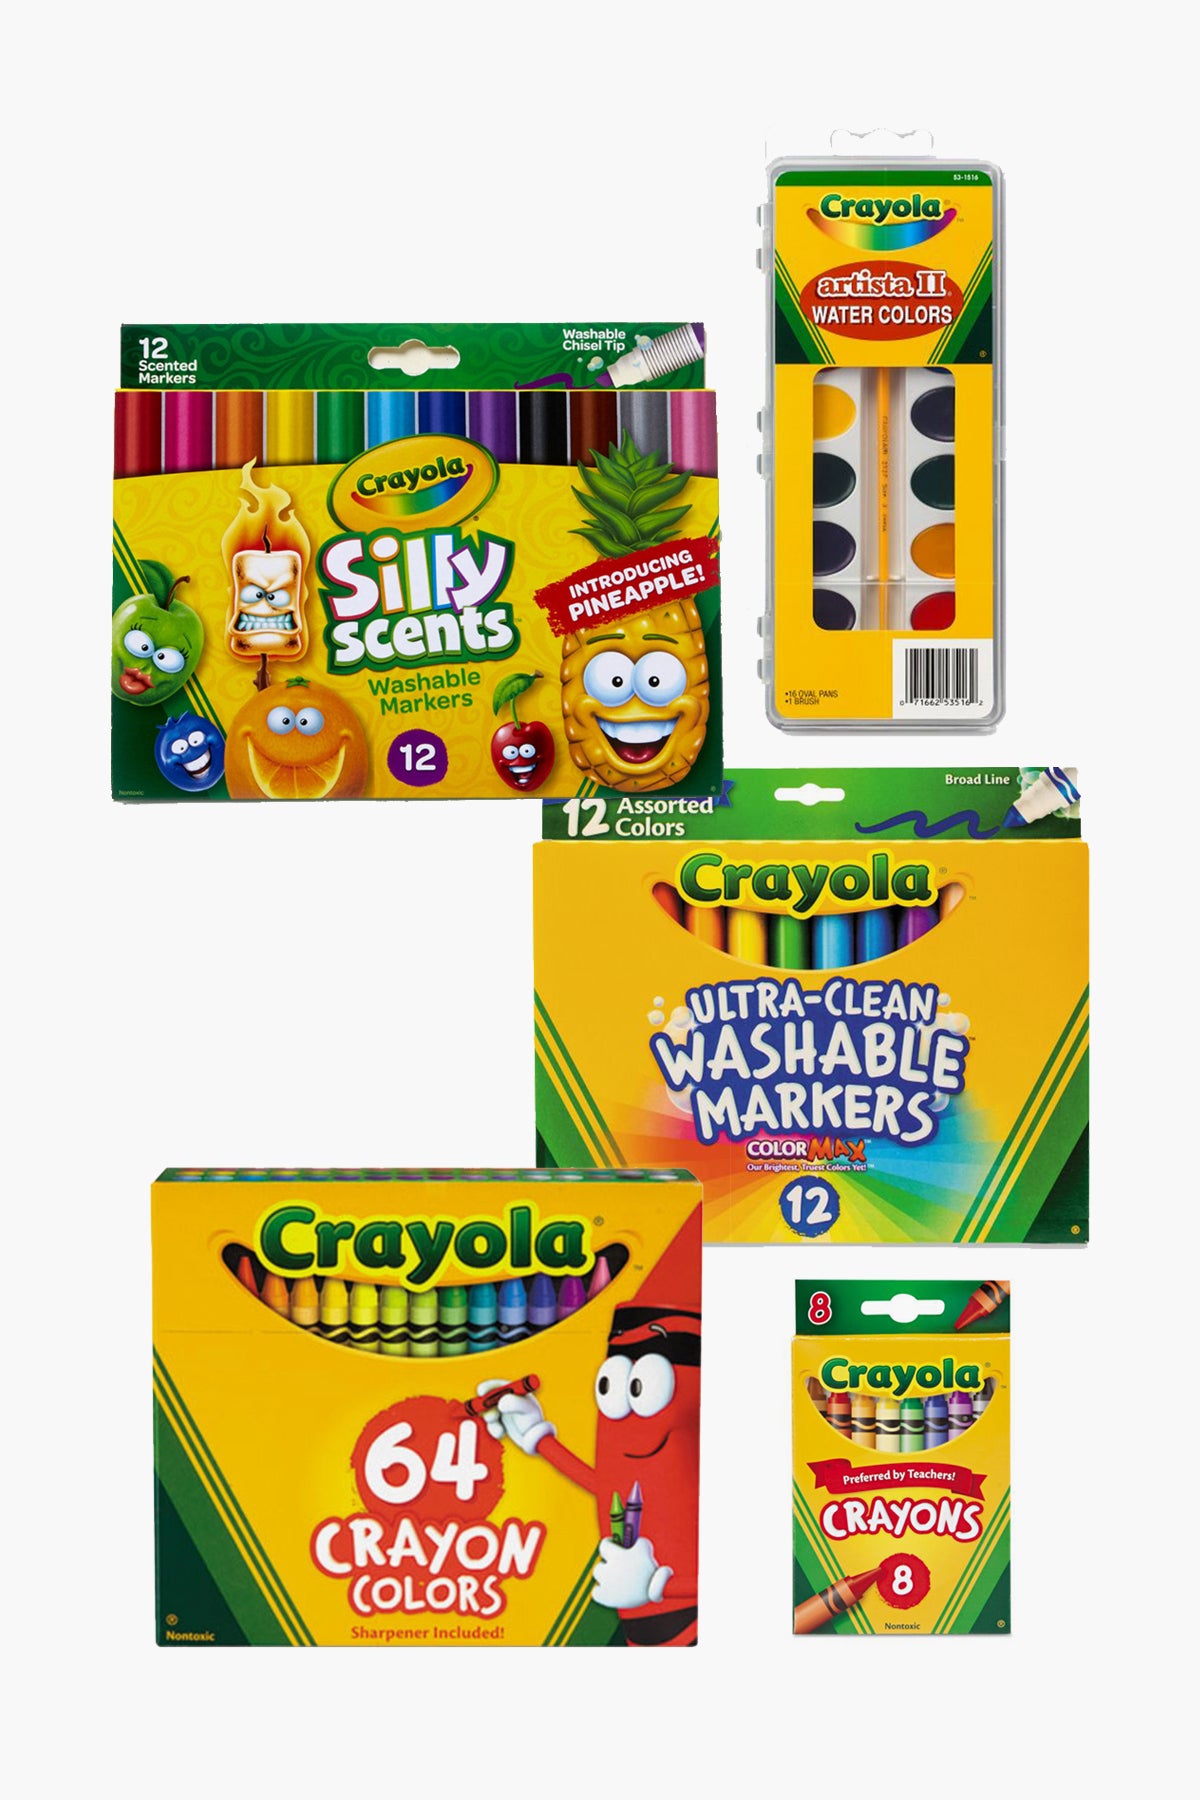 Crayola Fabulous Art Kit